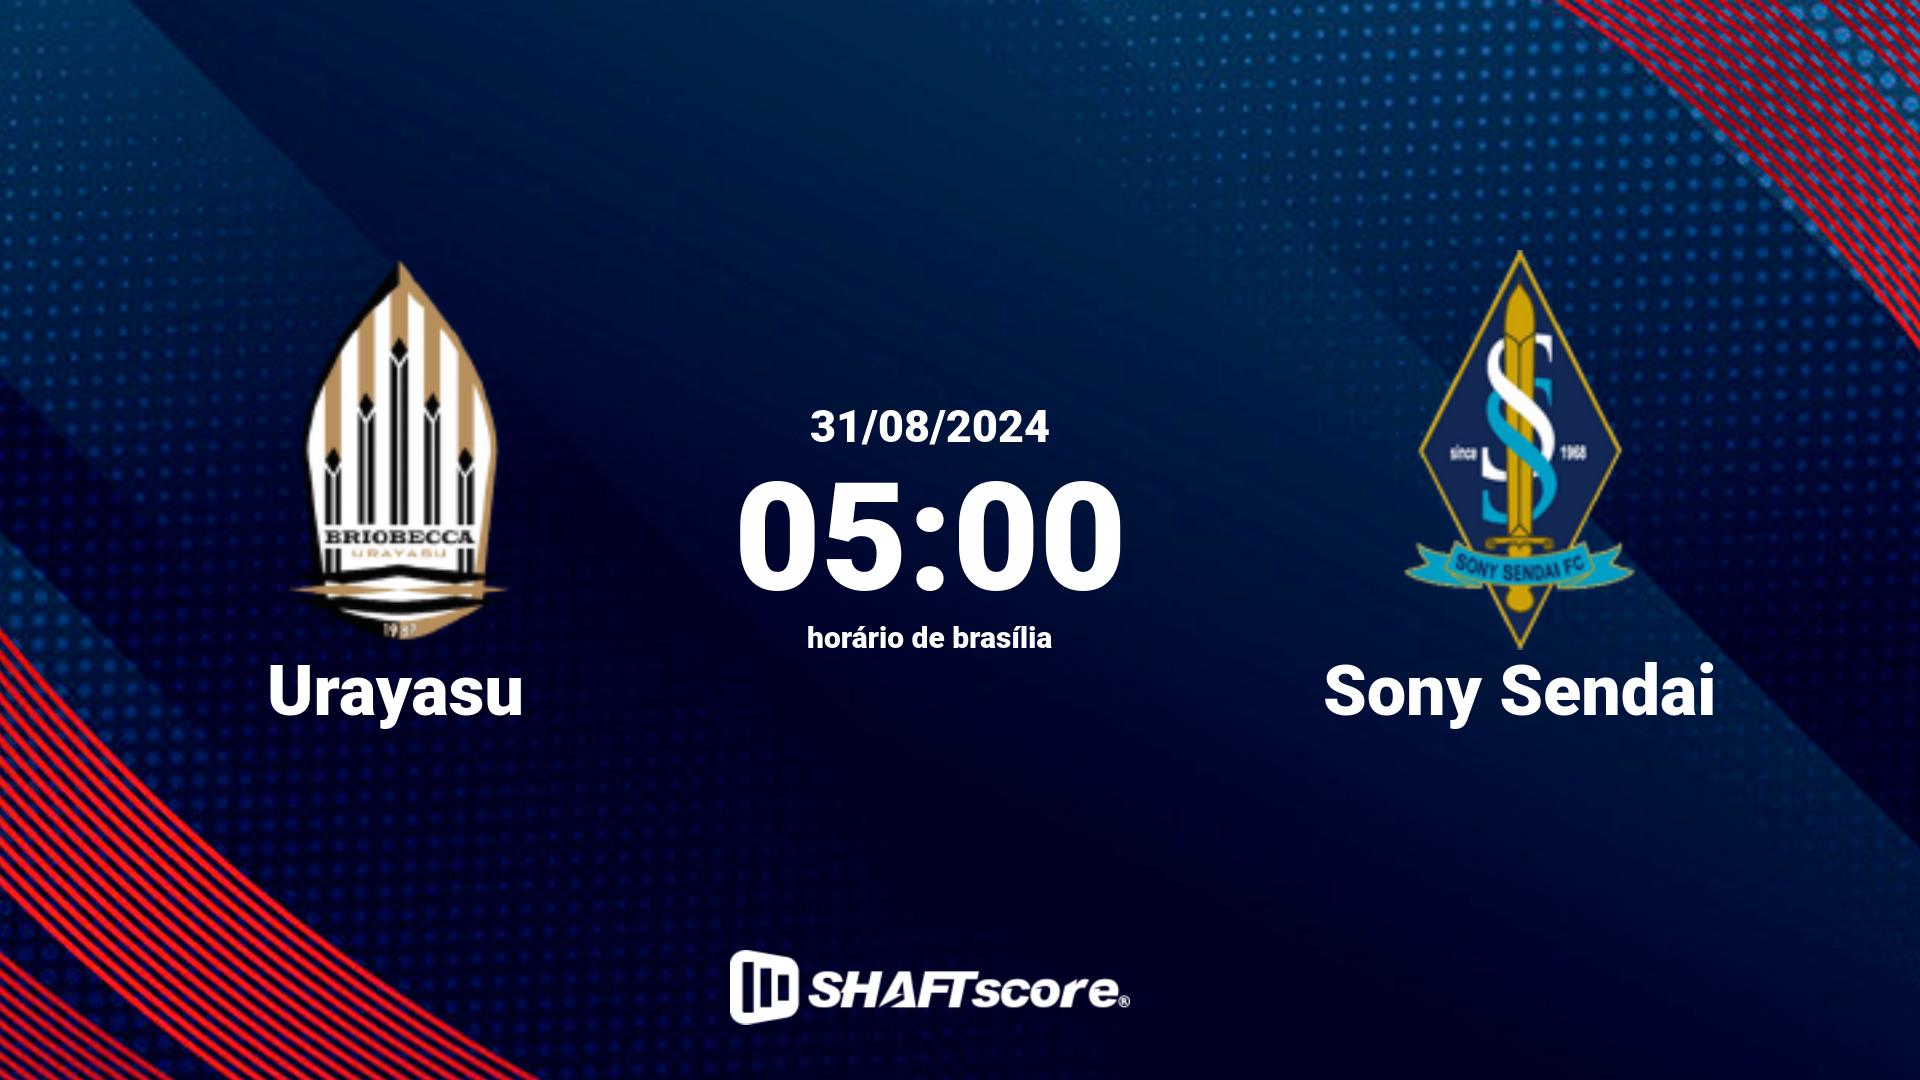 Estatísticas do jogo Urayasu vs Sony Sendai 31.08 05:00